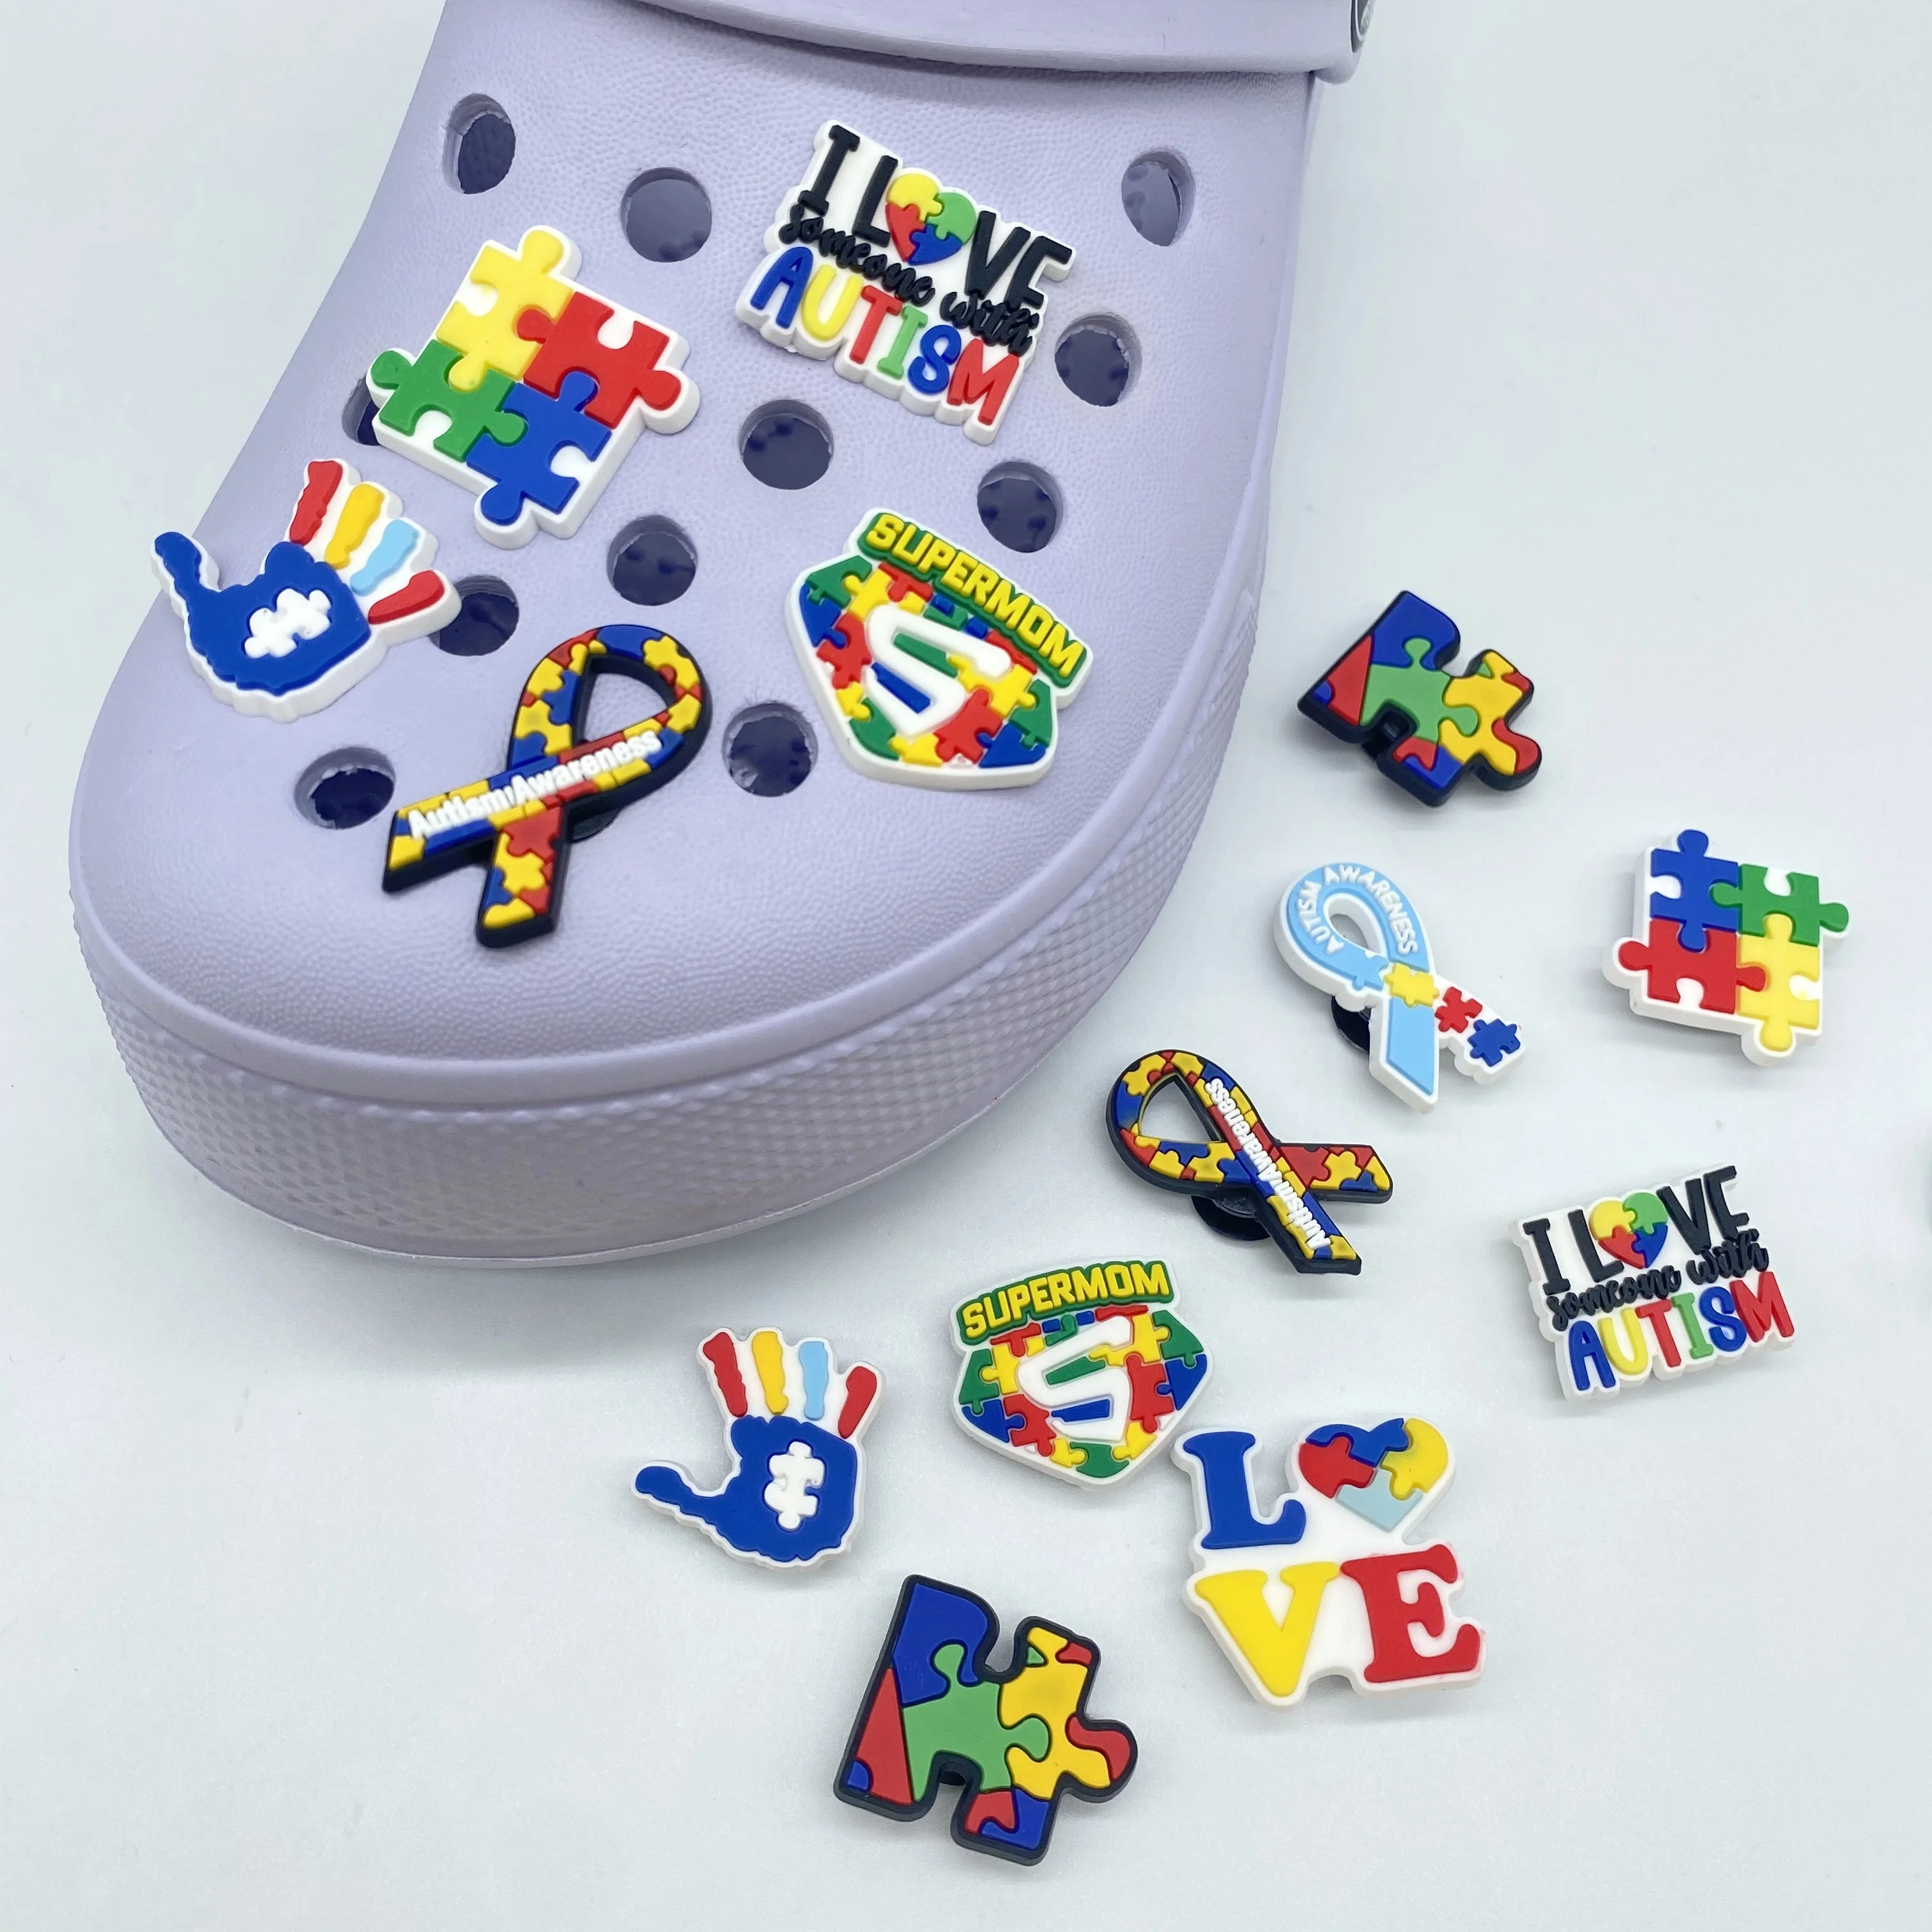 

100pcs+ wholesale bulk high quality soft pvc clog croc charms lace shoe charms for shoelace accessories autism awareness